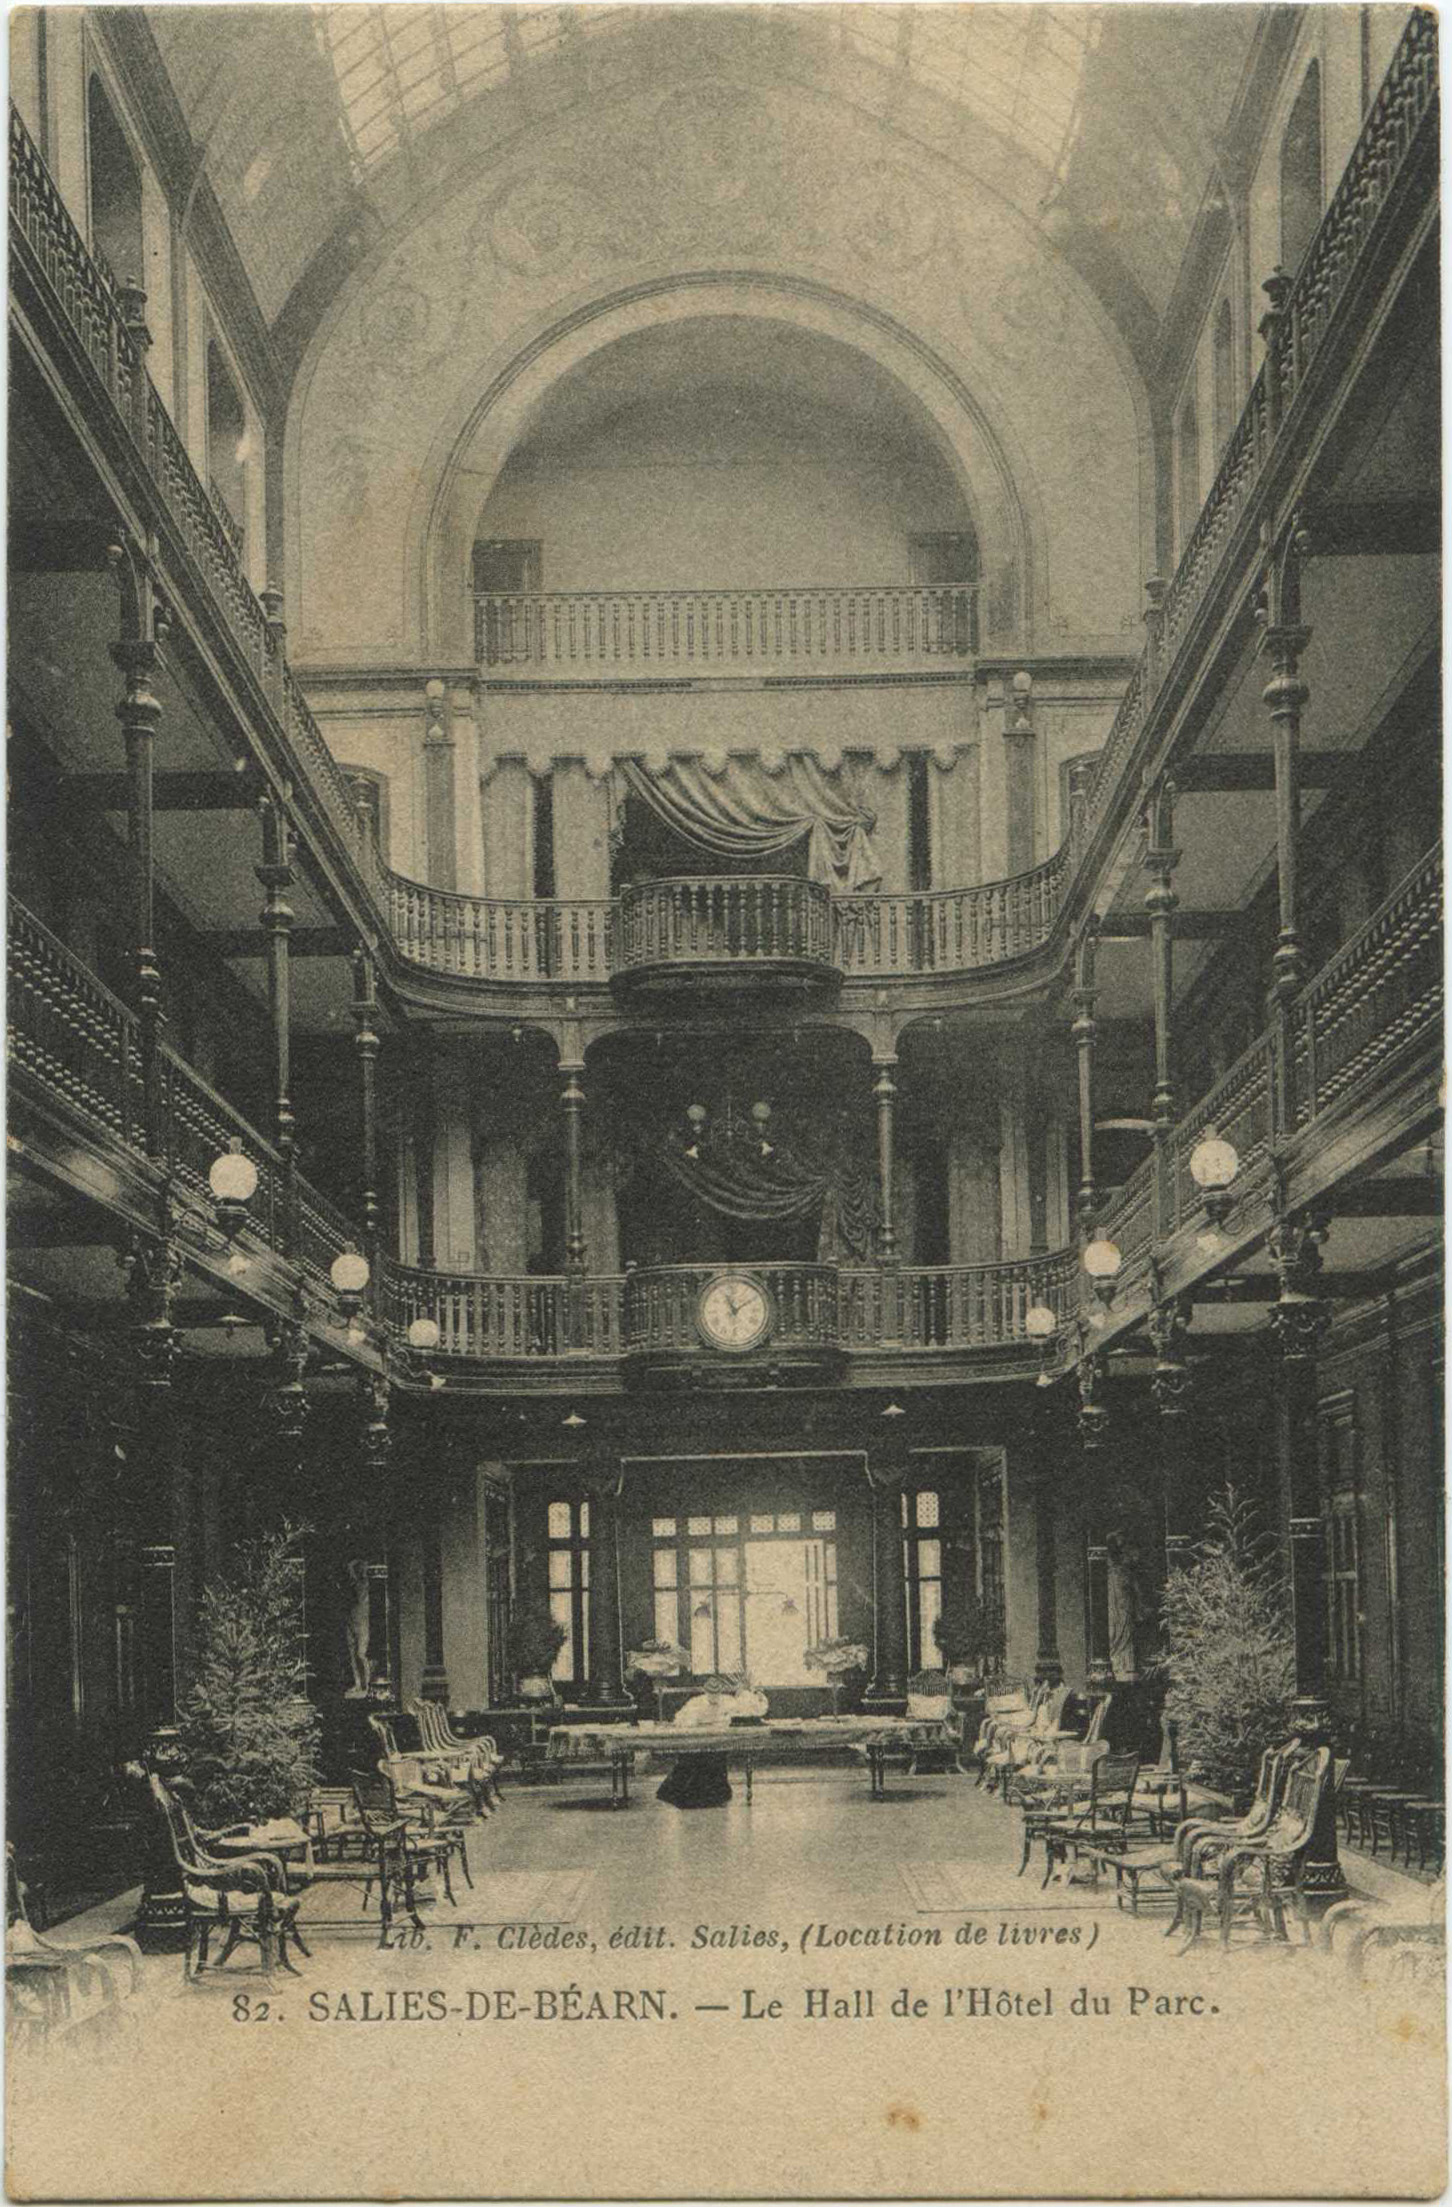 Salies-de-Béarn - Le Hall de l'Hôtel du Parc.